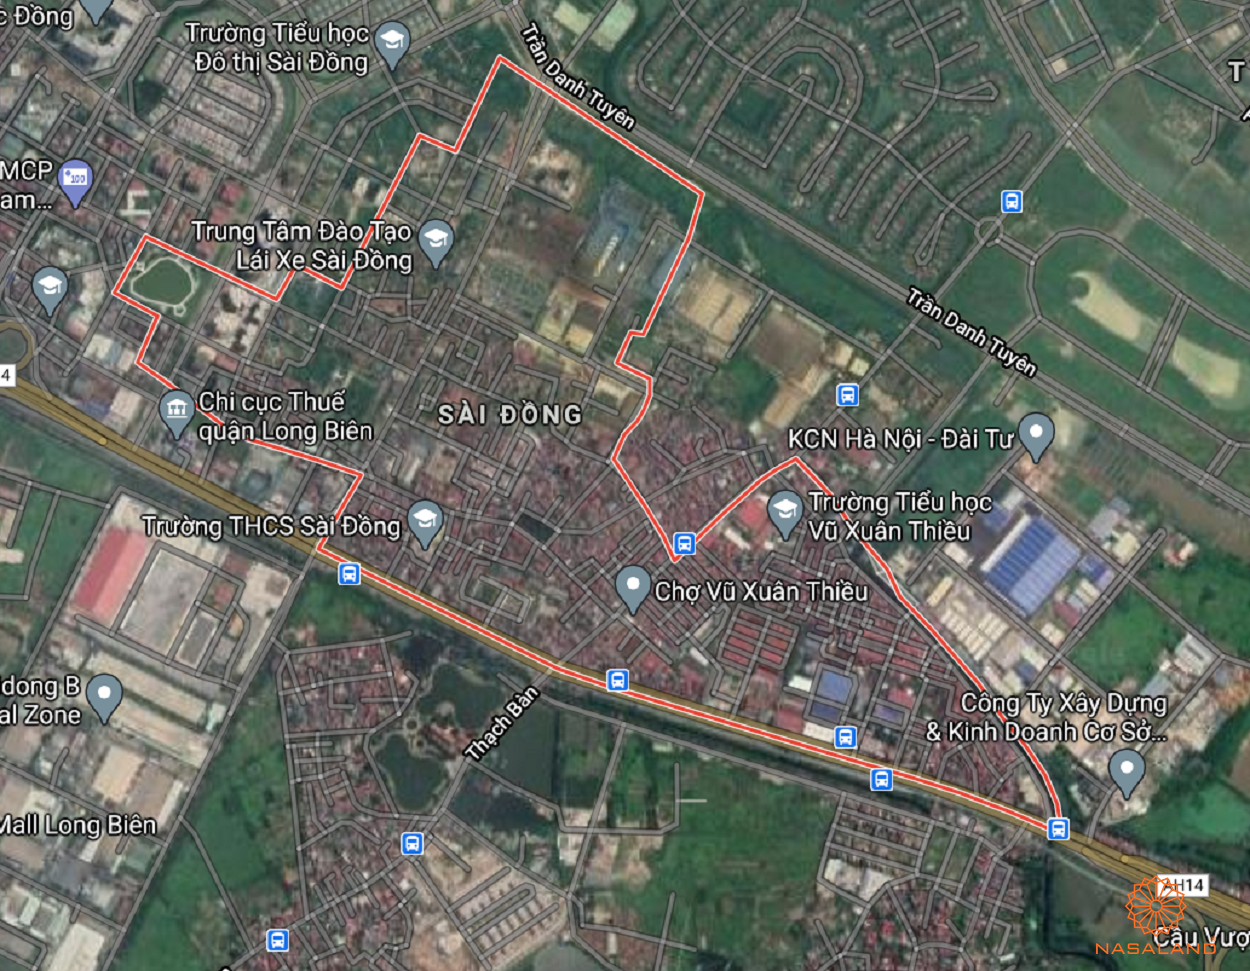 Bản đồ quy hoạch sử dụng đất Phường Sài Đồng theo bản đồ quy hoạch sử dụng đất năm 2020 Quận Long Biên, Thành phố Hà Nội.